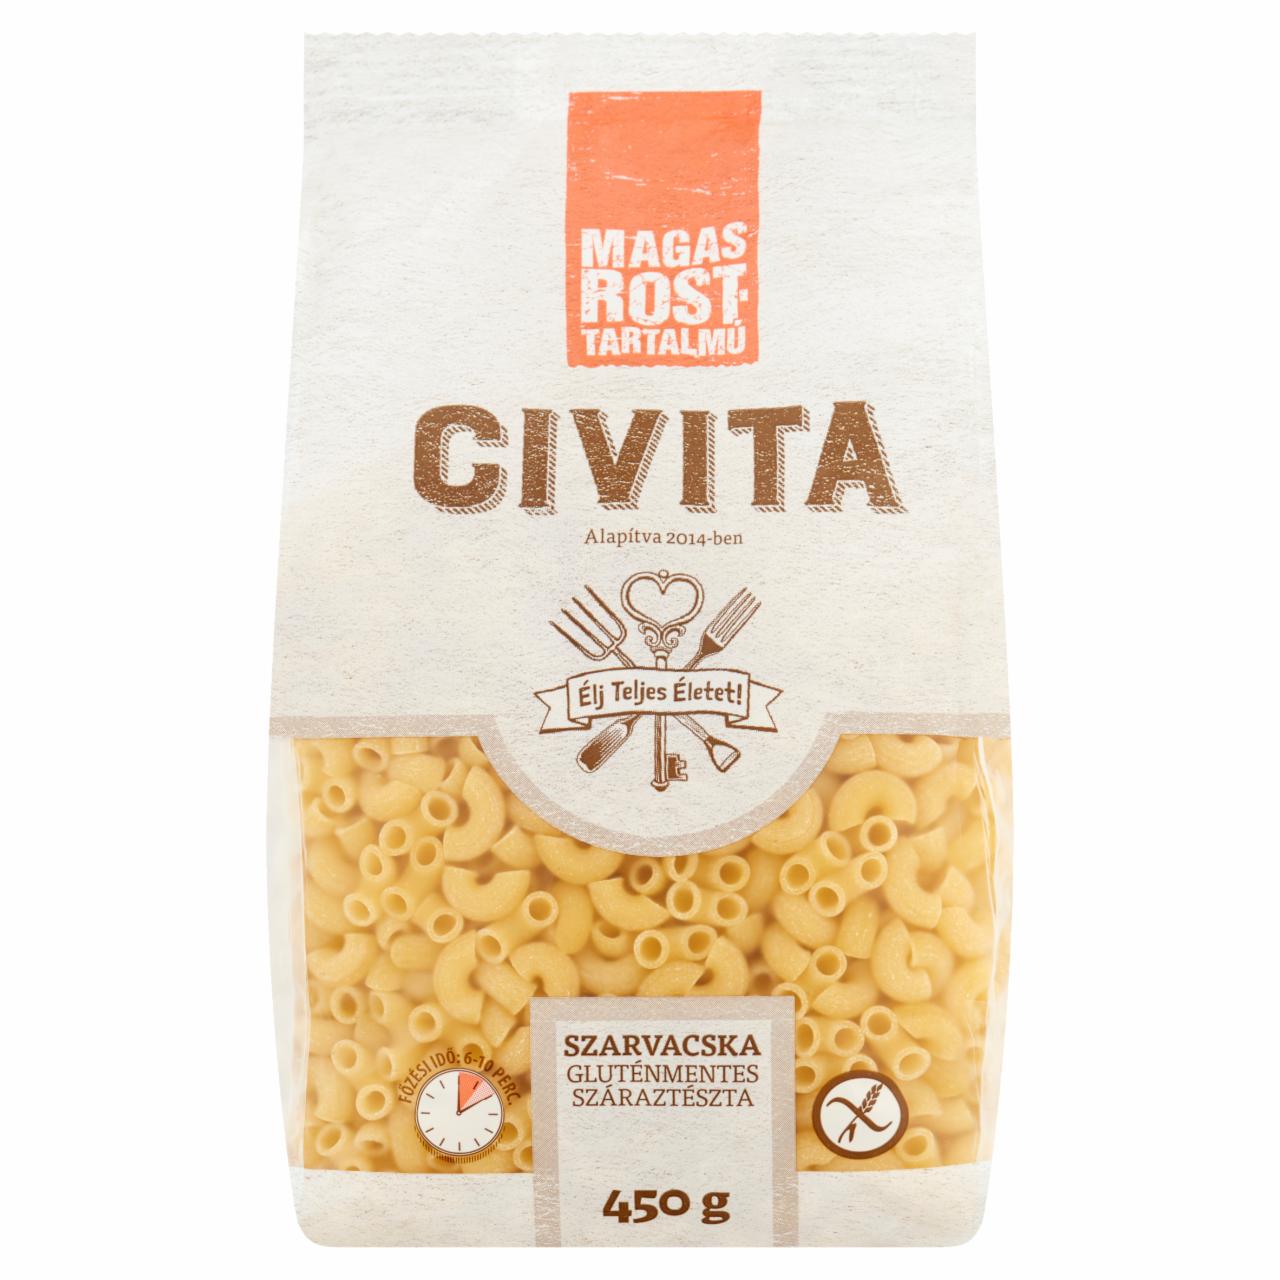 Képek - Civita szarvacska gluténmentes száraztészta 450 g